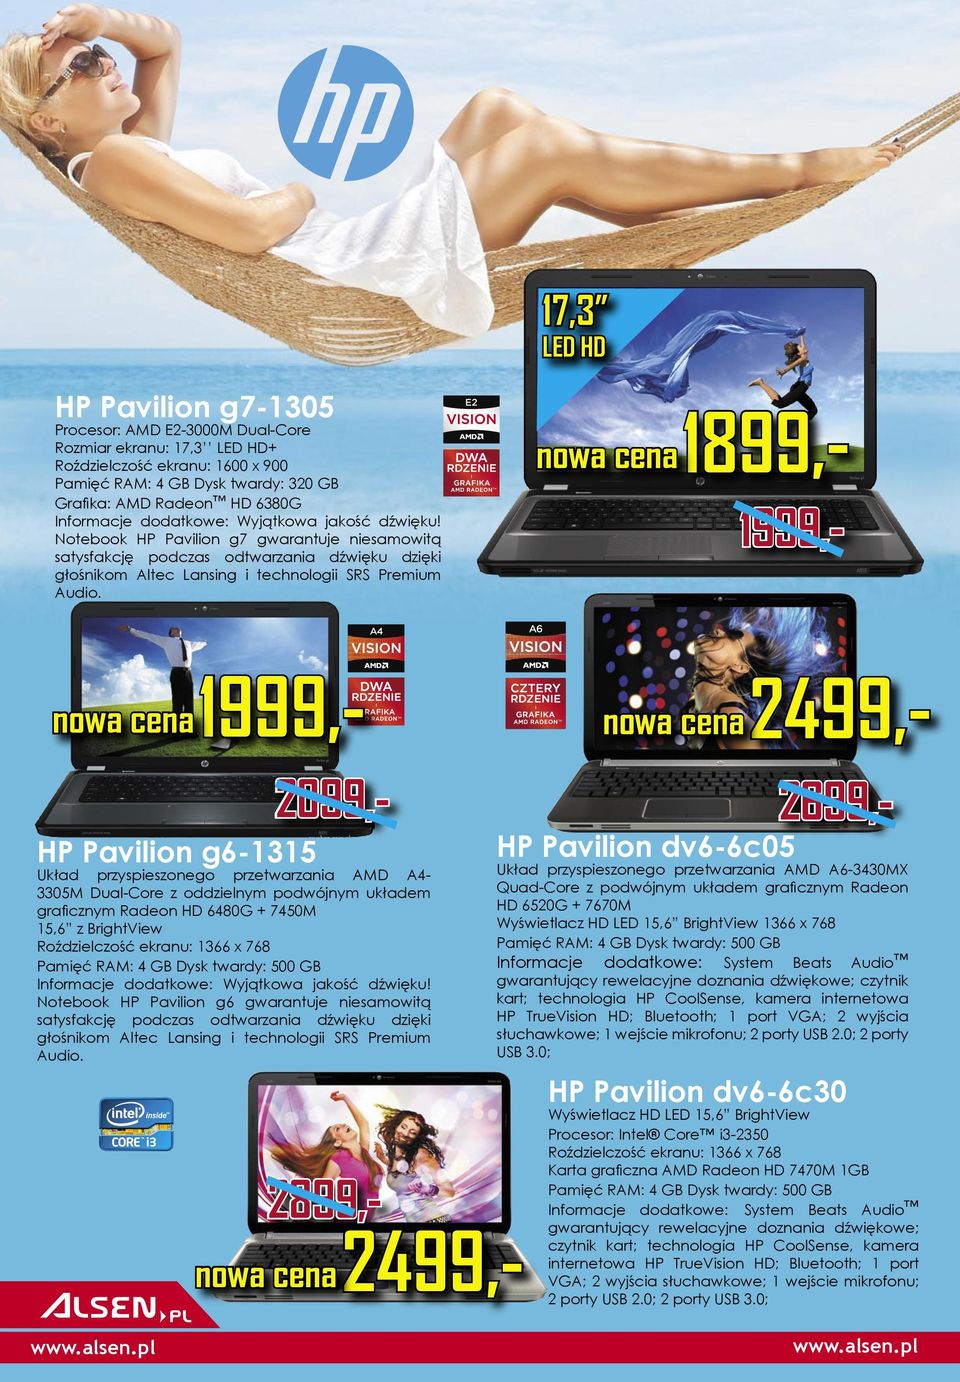 nowa cena nowa cena 1999,- 1999,2099,- HP Pavilion g6-1315 Układ przyspieszonego przetwarzania AMD A43305M Dual-Core z oddzielnym podwójnym układem graﬁcznym Radeon HD 6480G + 7450M 15,6 z BrightView